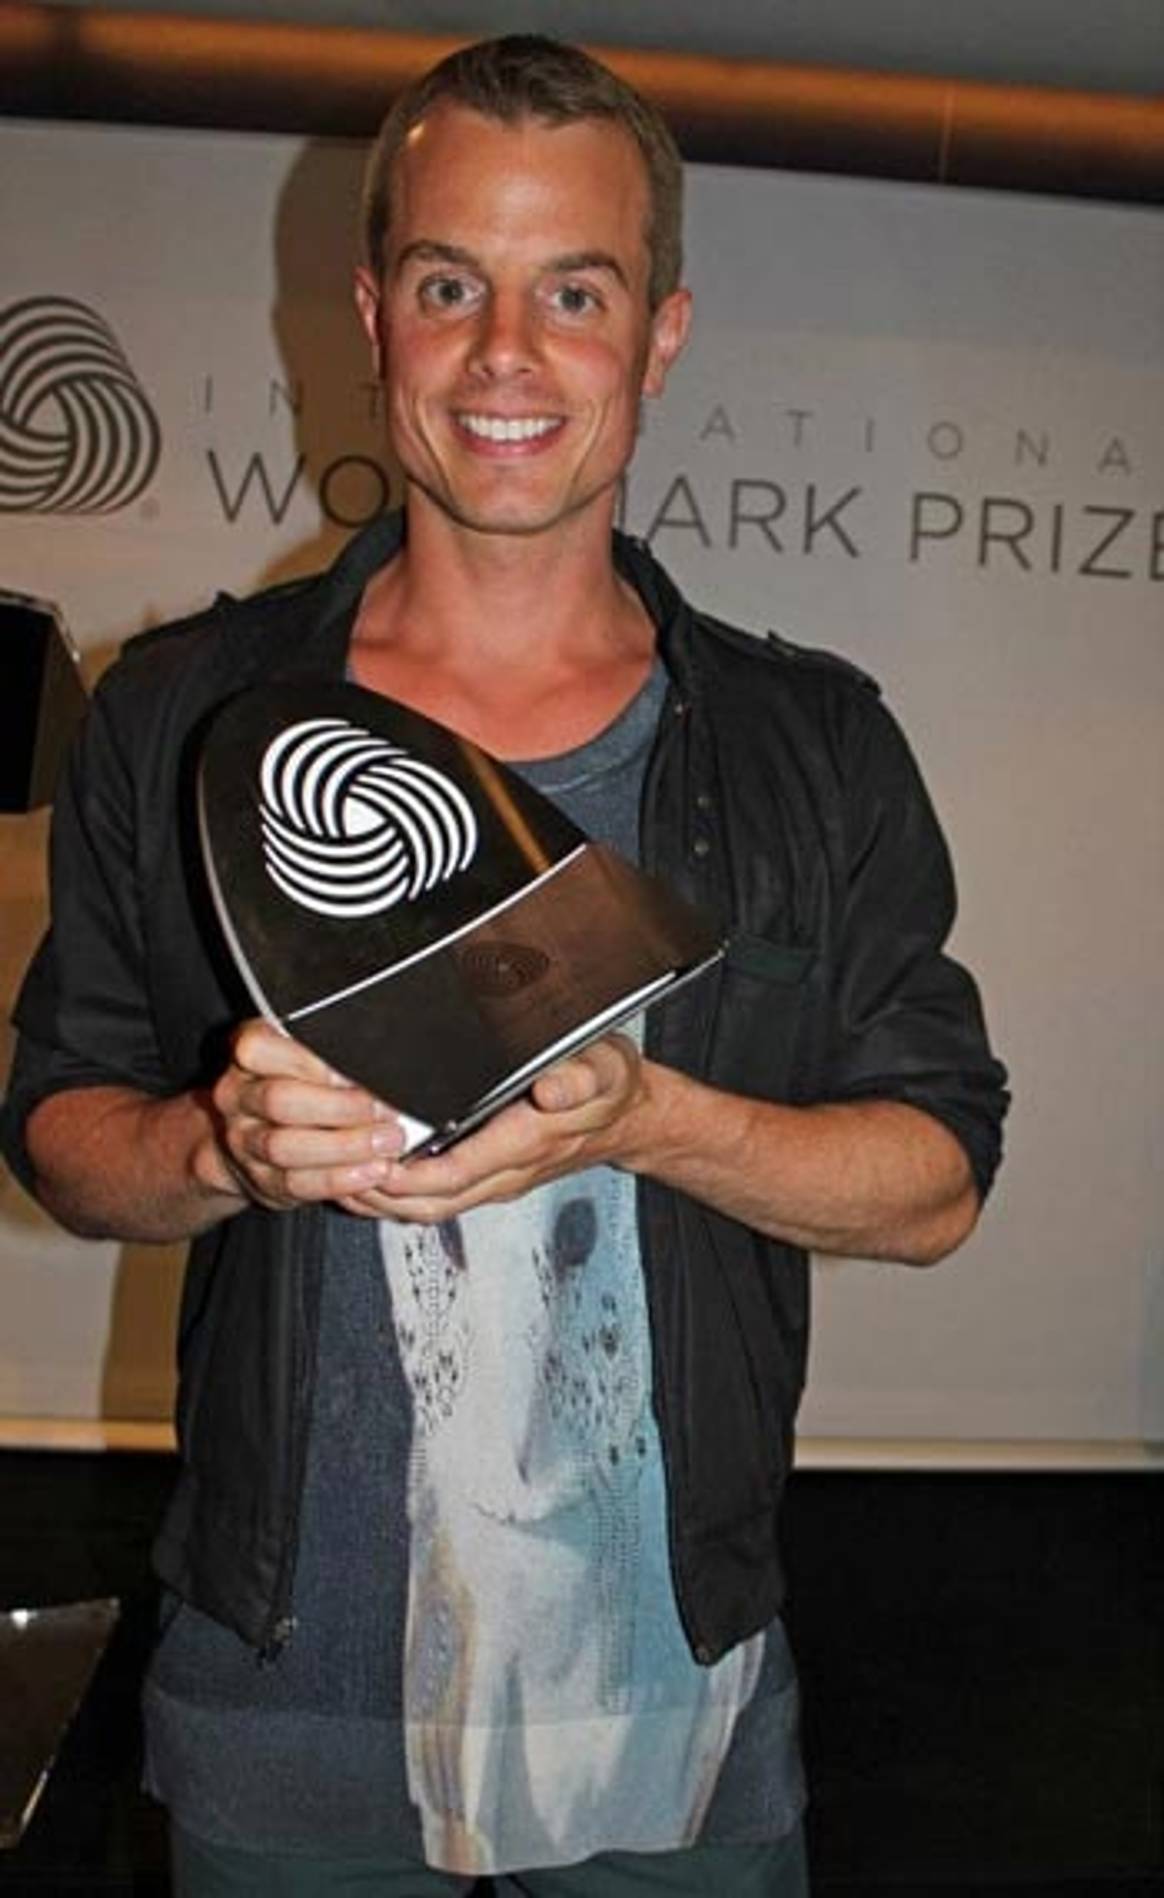 Christian Wijnants wins European spot for Woolmark Prize